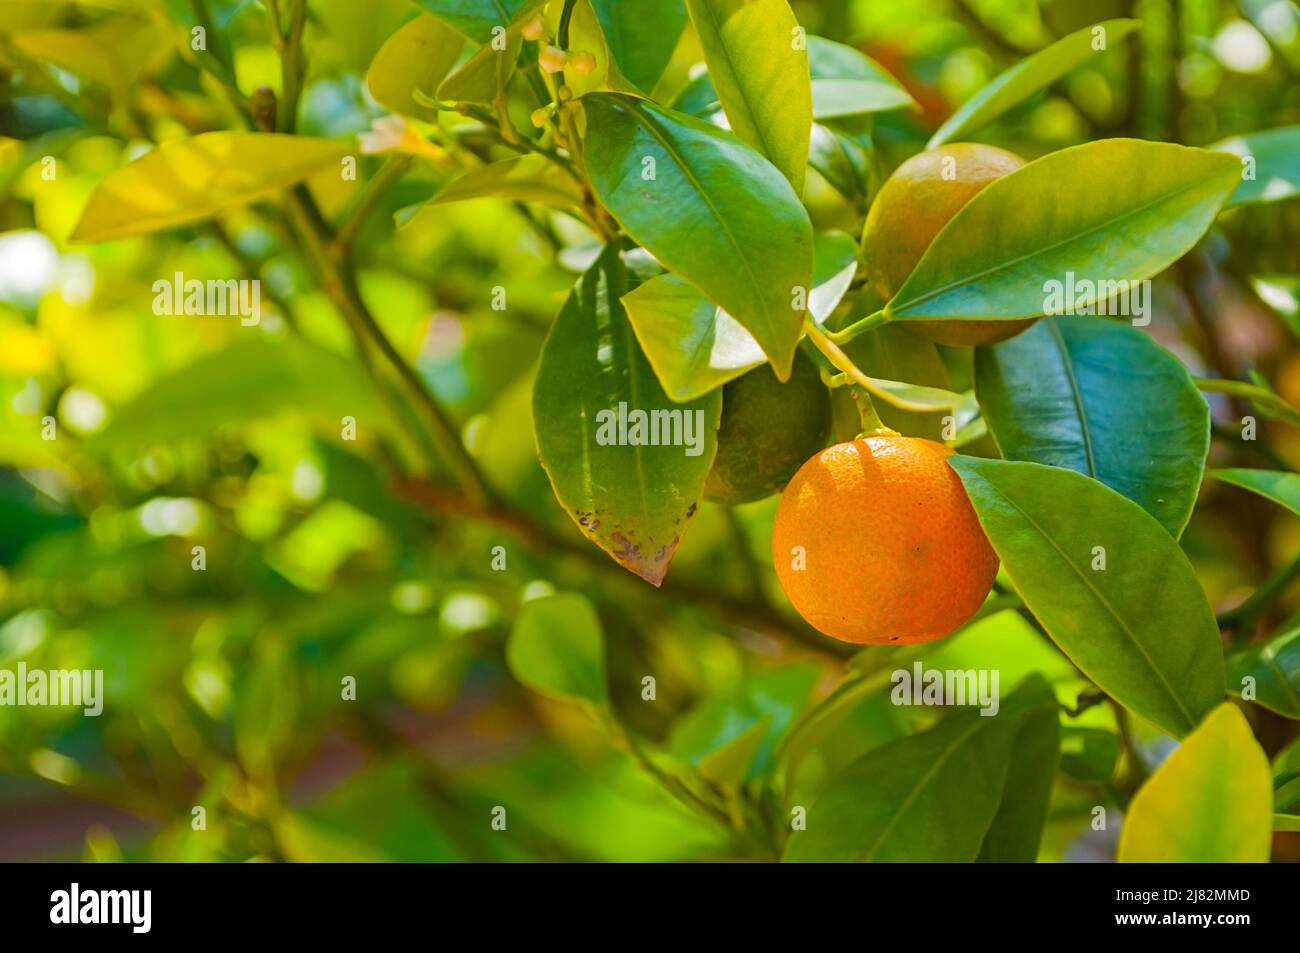 Kumquat fruits in summer garden, fortunella japonica kumquats growing in the summer garden Stock Photo